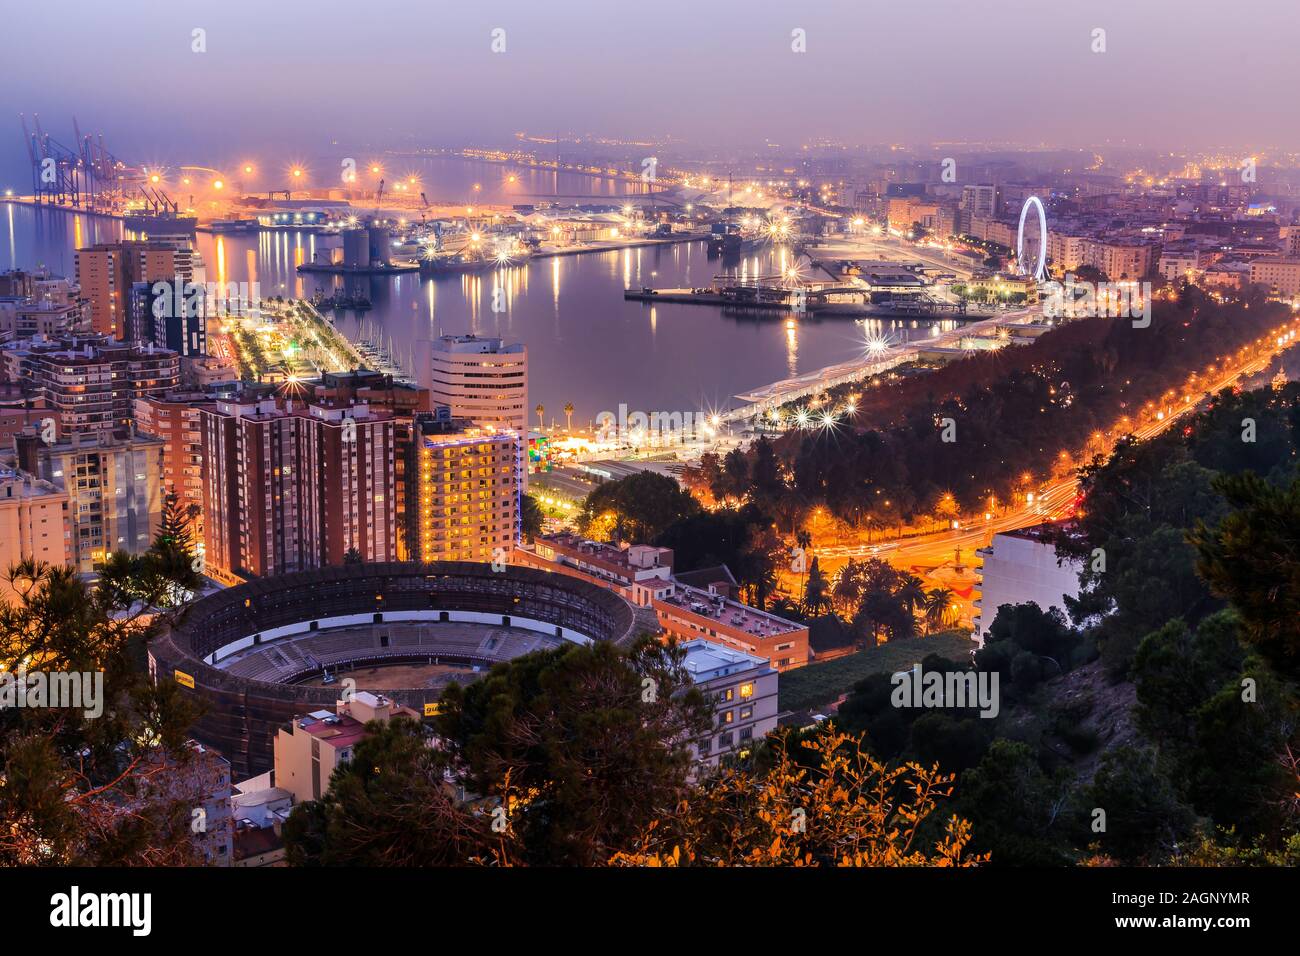 Vista Panorámica de noche de Málaga en la costa mediterránea española. Vista de la ciudad sobre la Costa del Sol, con el puerto iluminado, edificios residenciales Foto de stock